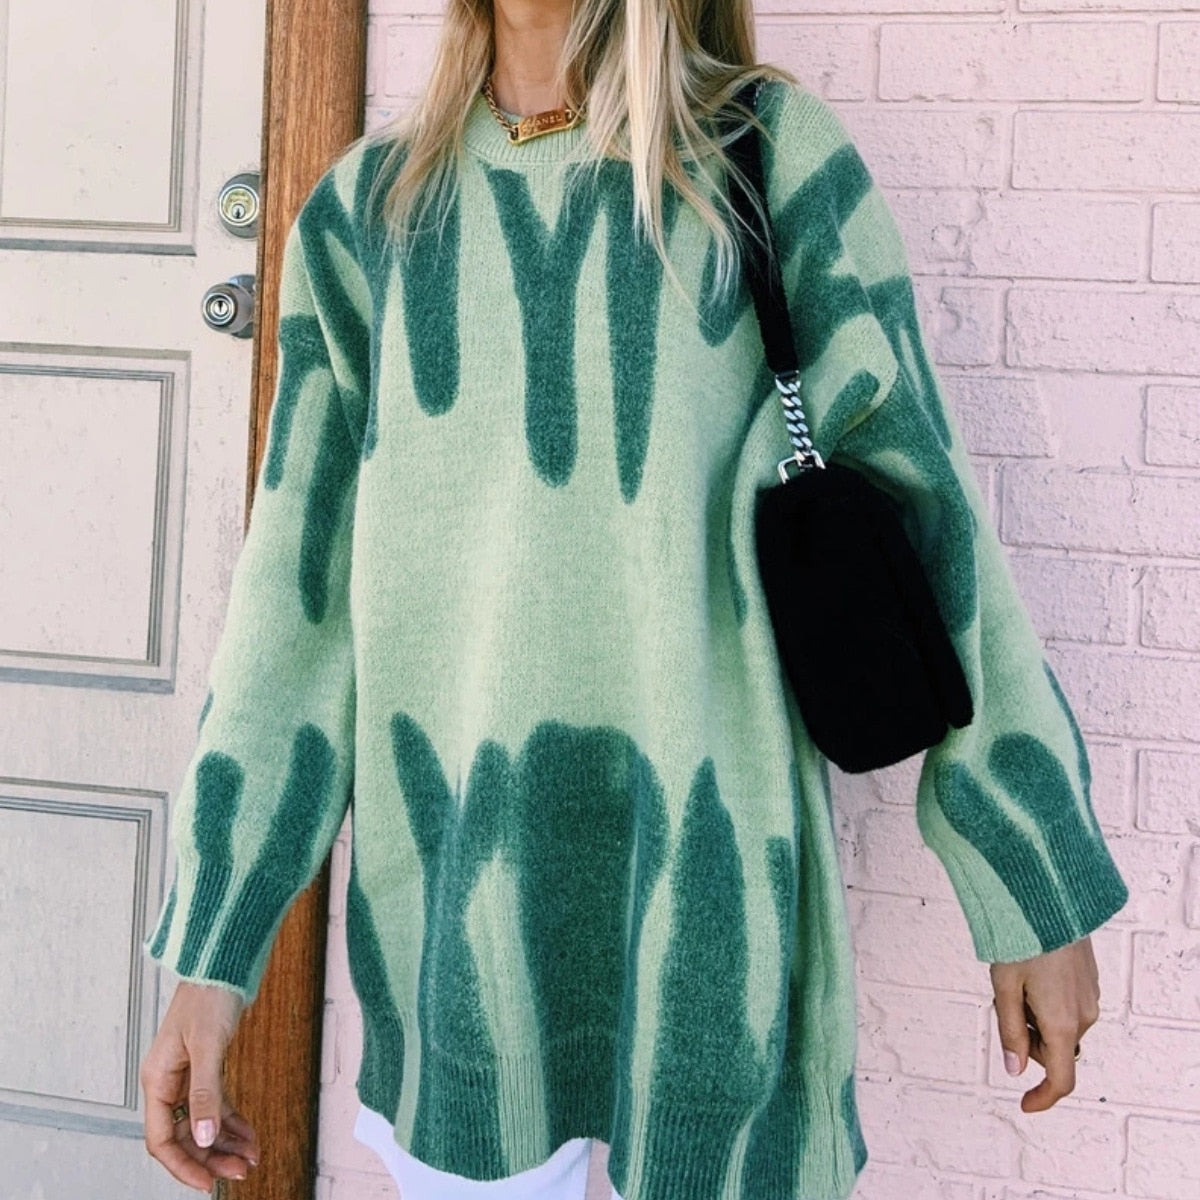 Chicmy Women Knitted Sweater Vintage Green Striped Print Sweater Oversized Pullovers Winter Streetwear Long Sweaters Tie Dye Outerwear